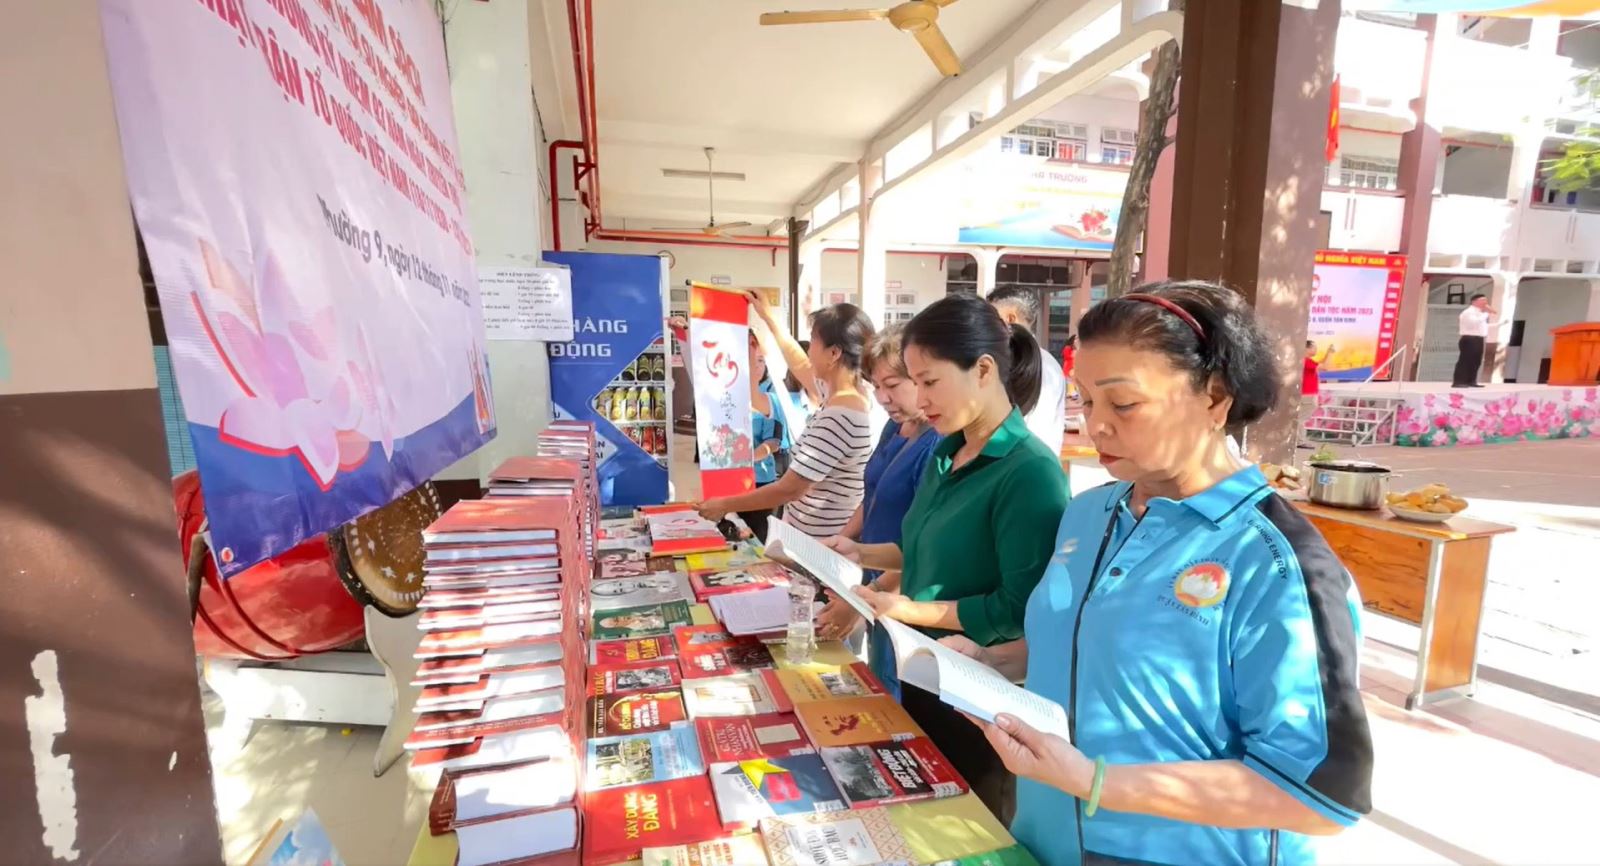 Thư viện quận Tân Bình: Tổ chức phục vụ luân chuyển, trưng bày, triển lãm tài liệu theo chuyên đề tháng 11 năm 2023